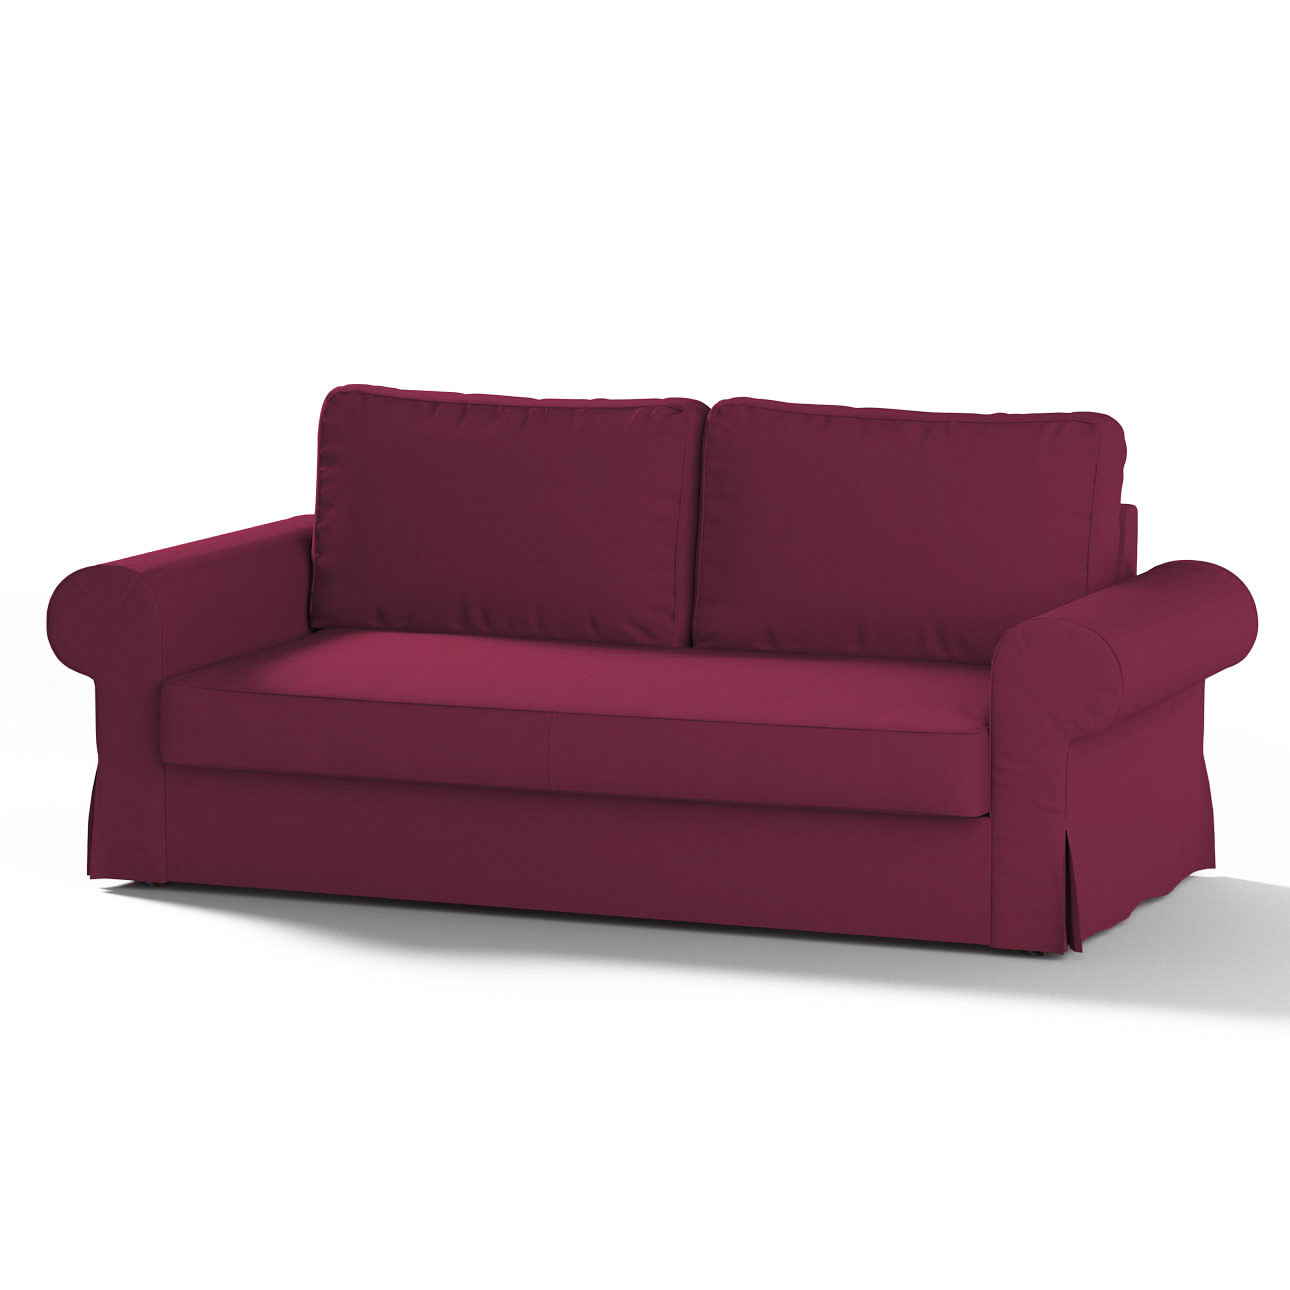 Bezug für Backabro 3-Sitzer Sofa ausklappbar, pflaume , Bezug für Backabro günstig online kaufen